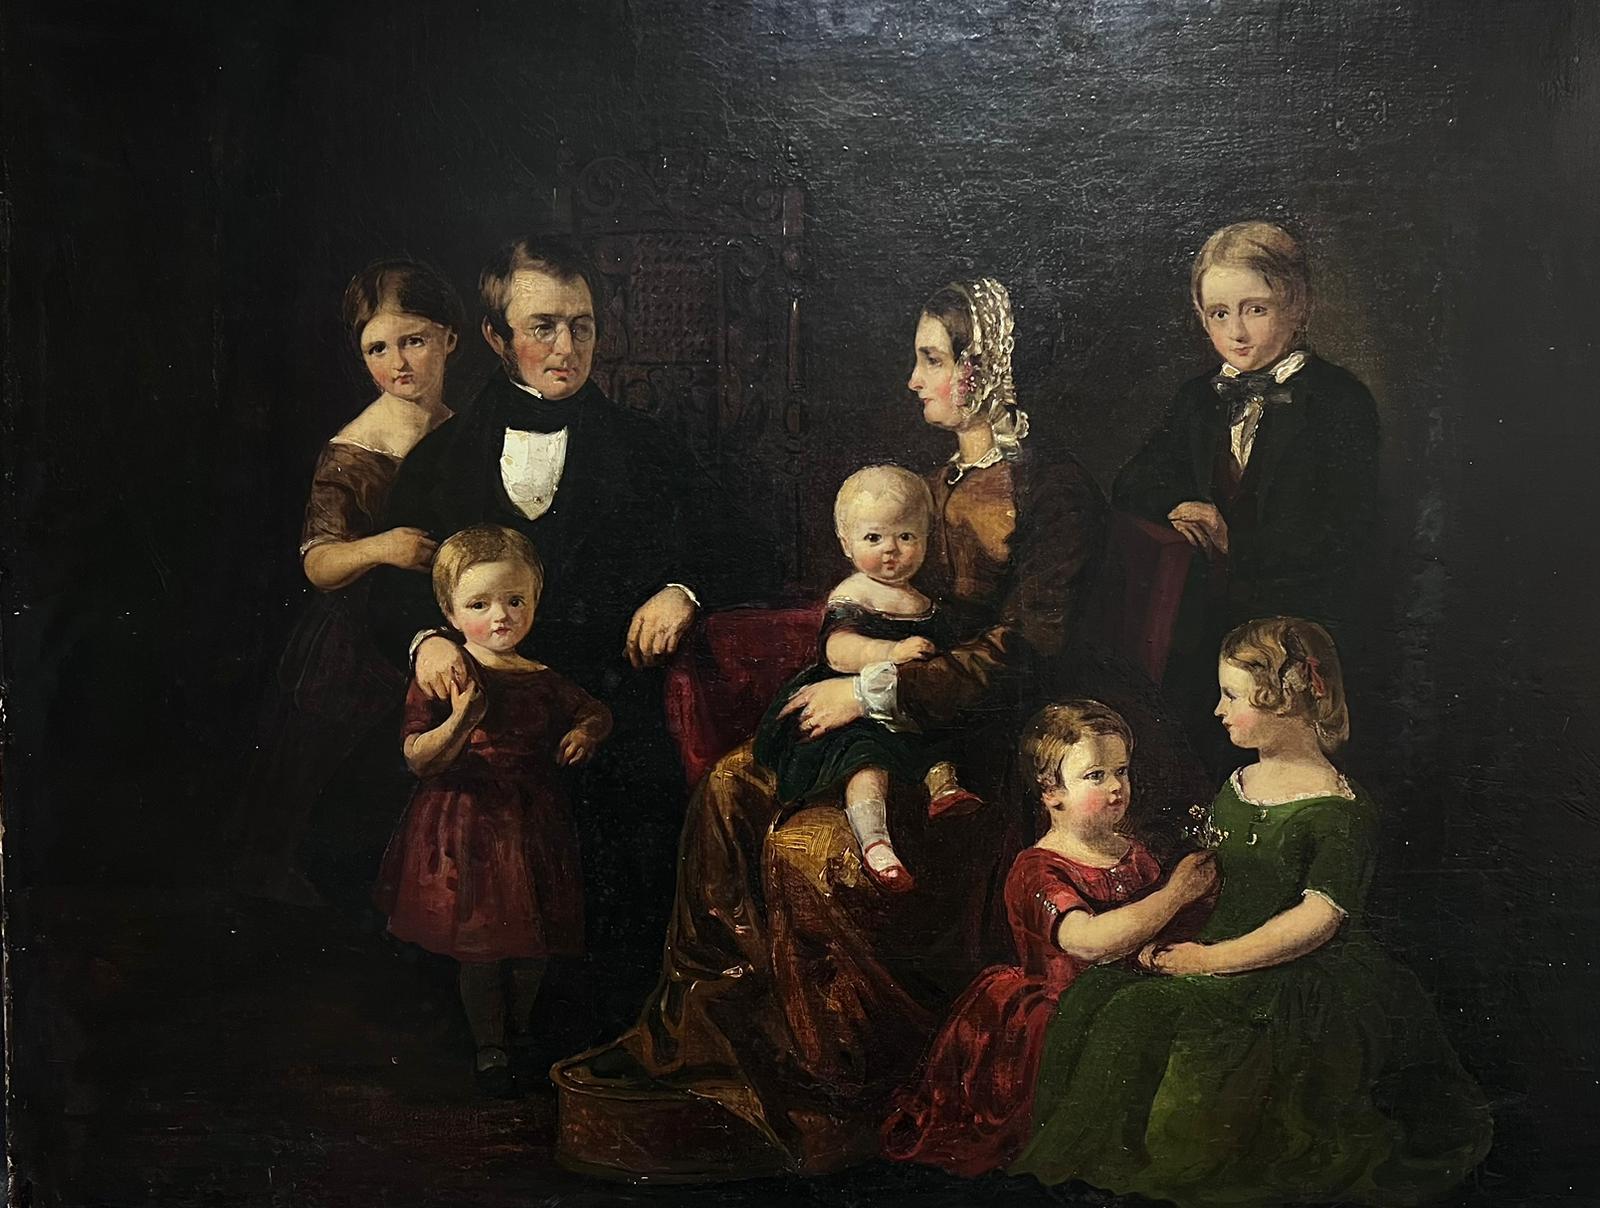 Großes viktorianisches Familienporträt von 8 Familienmitgliedern im Raum, Ölgemälde